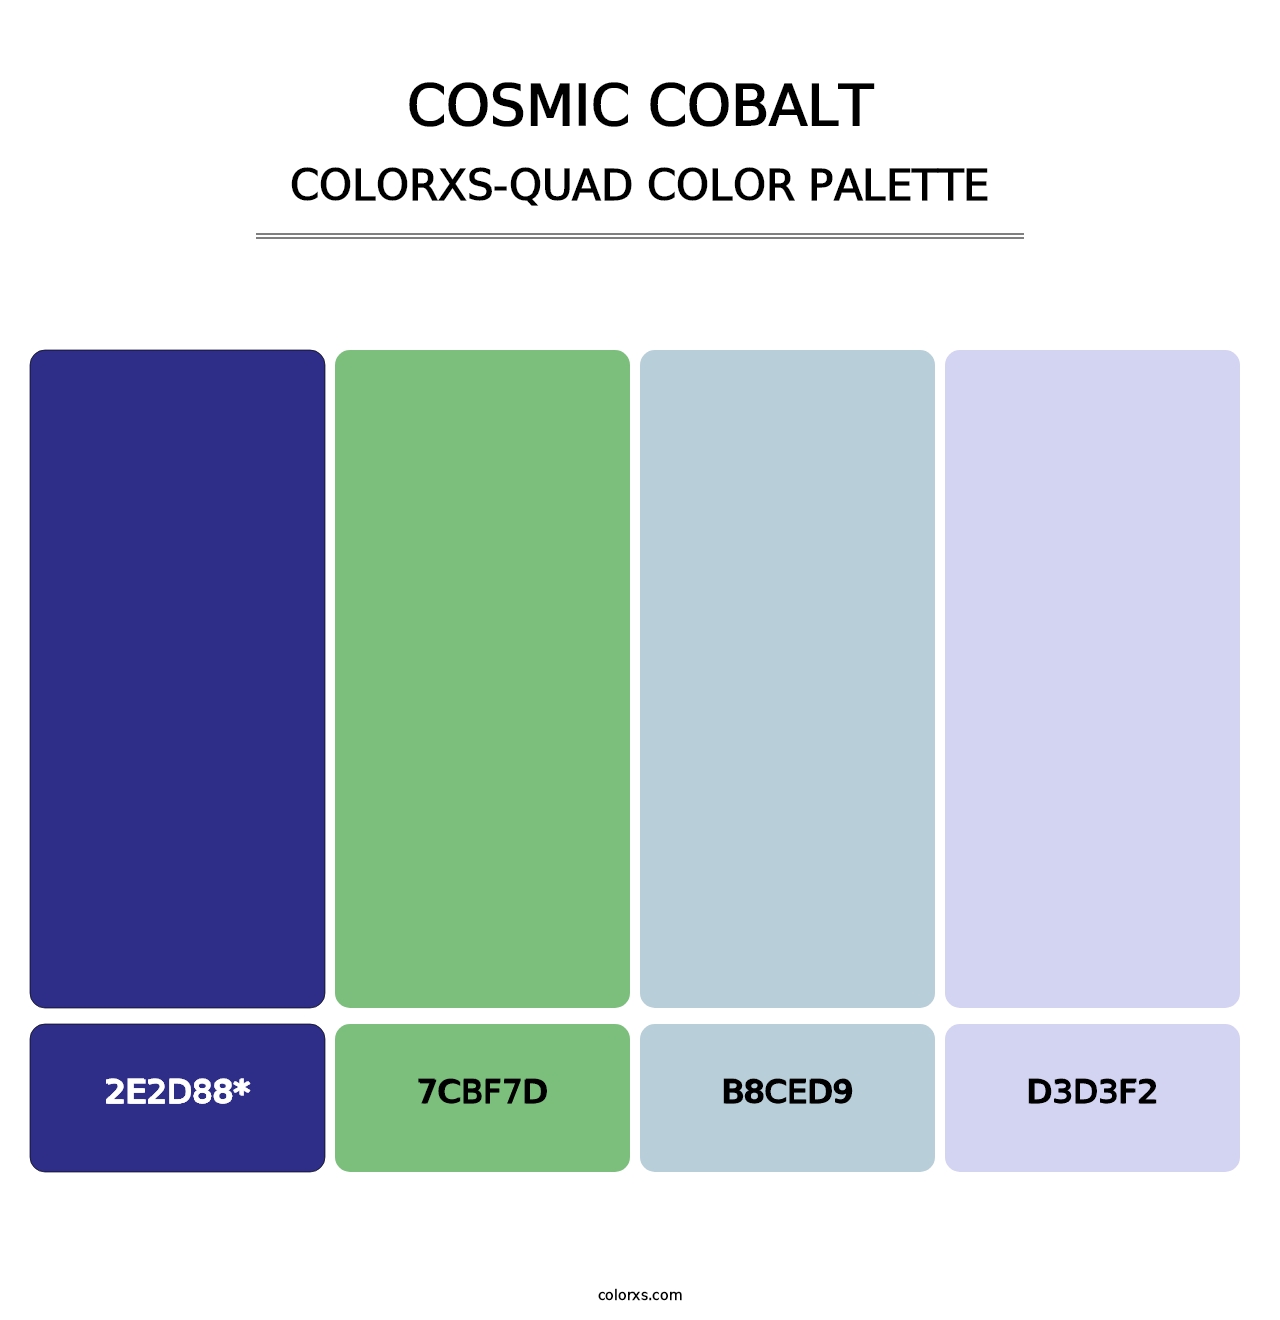 Cosmic Cobalt - Colorxs Quad Palette